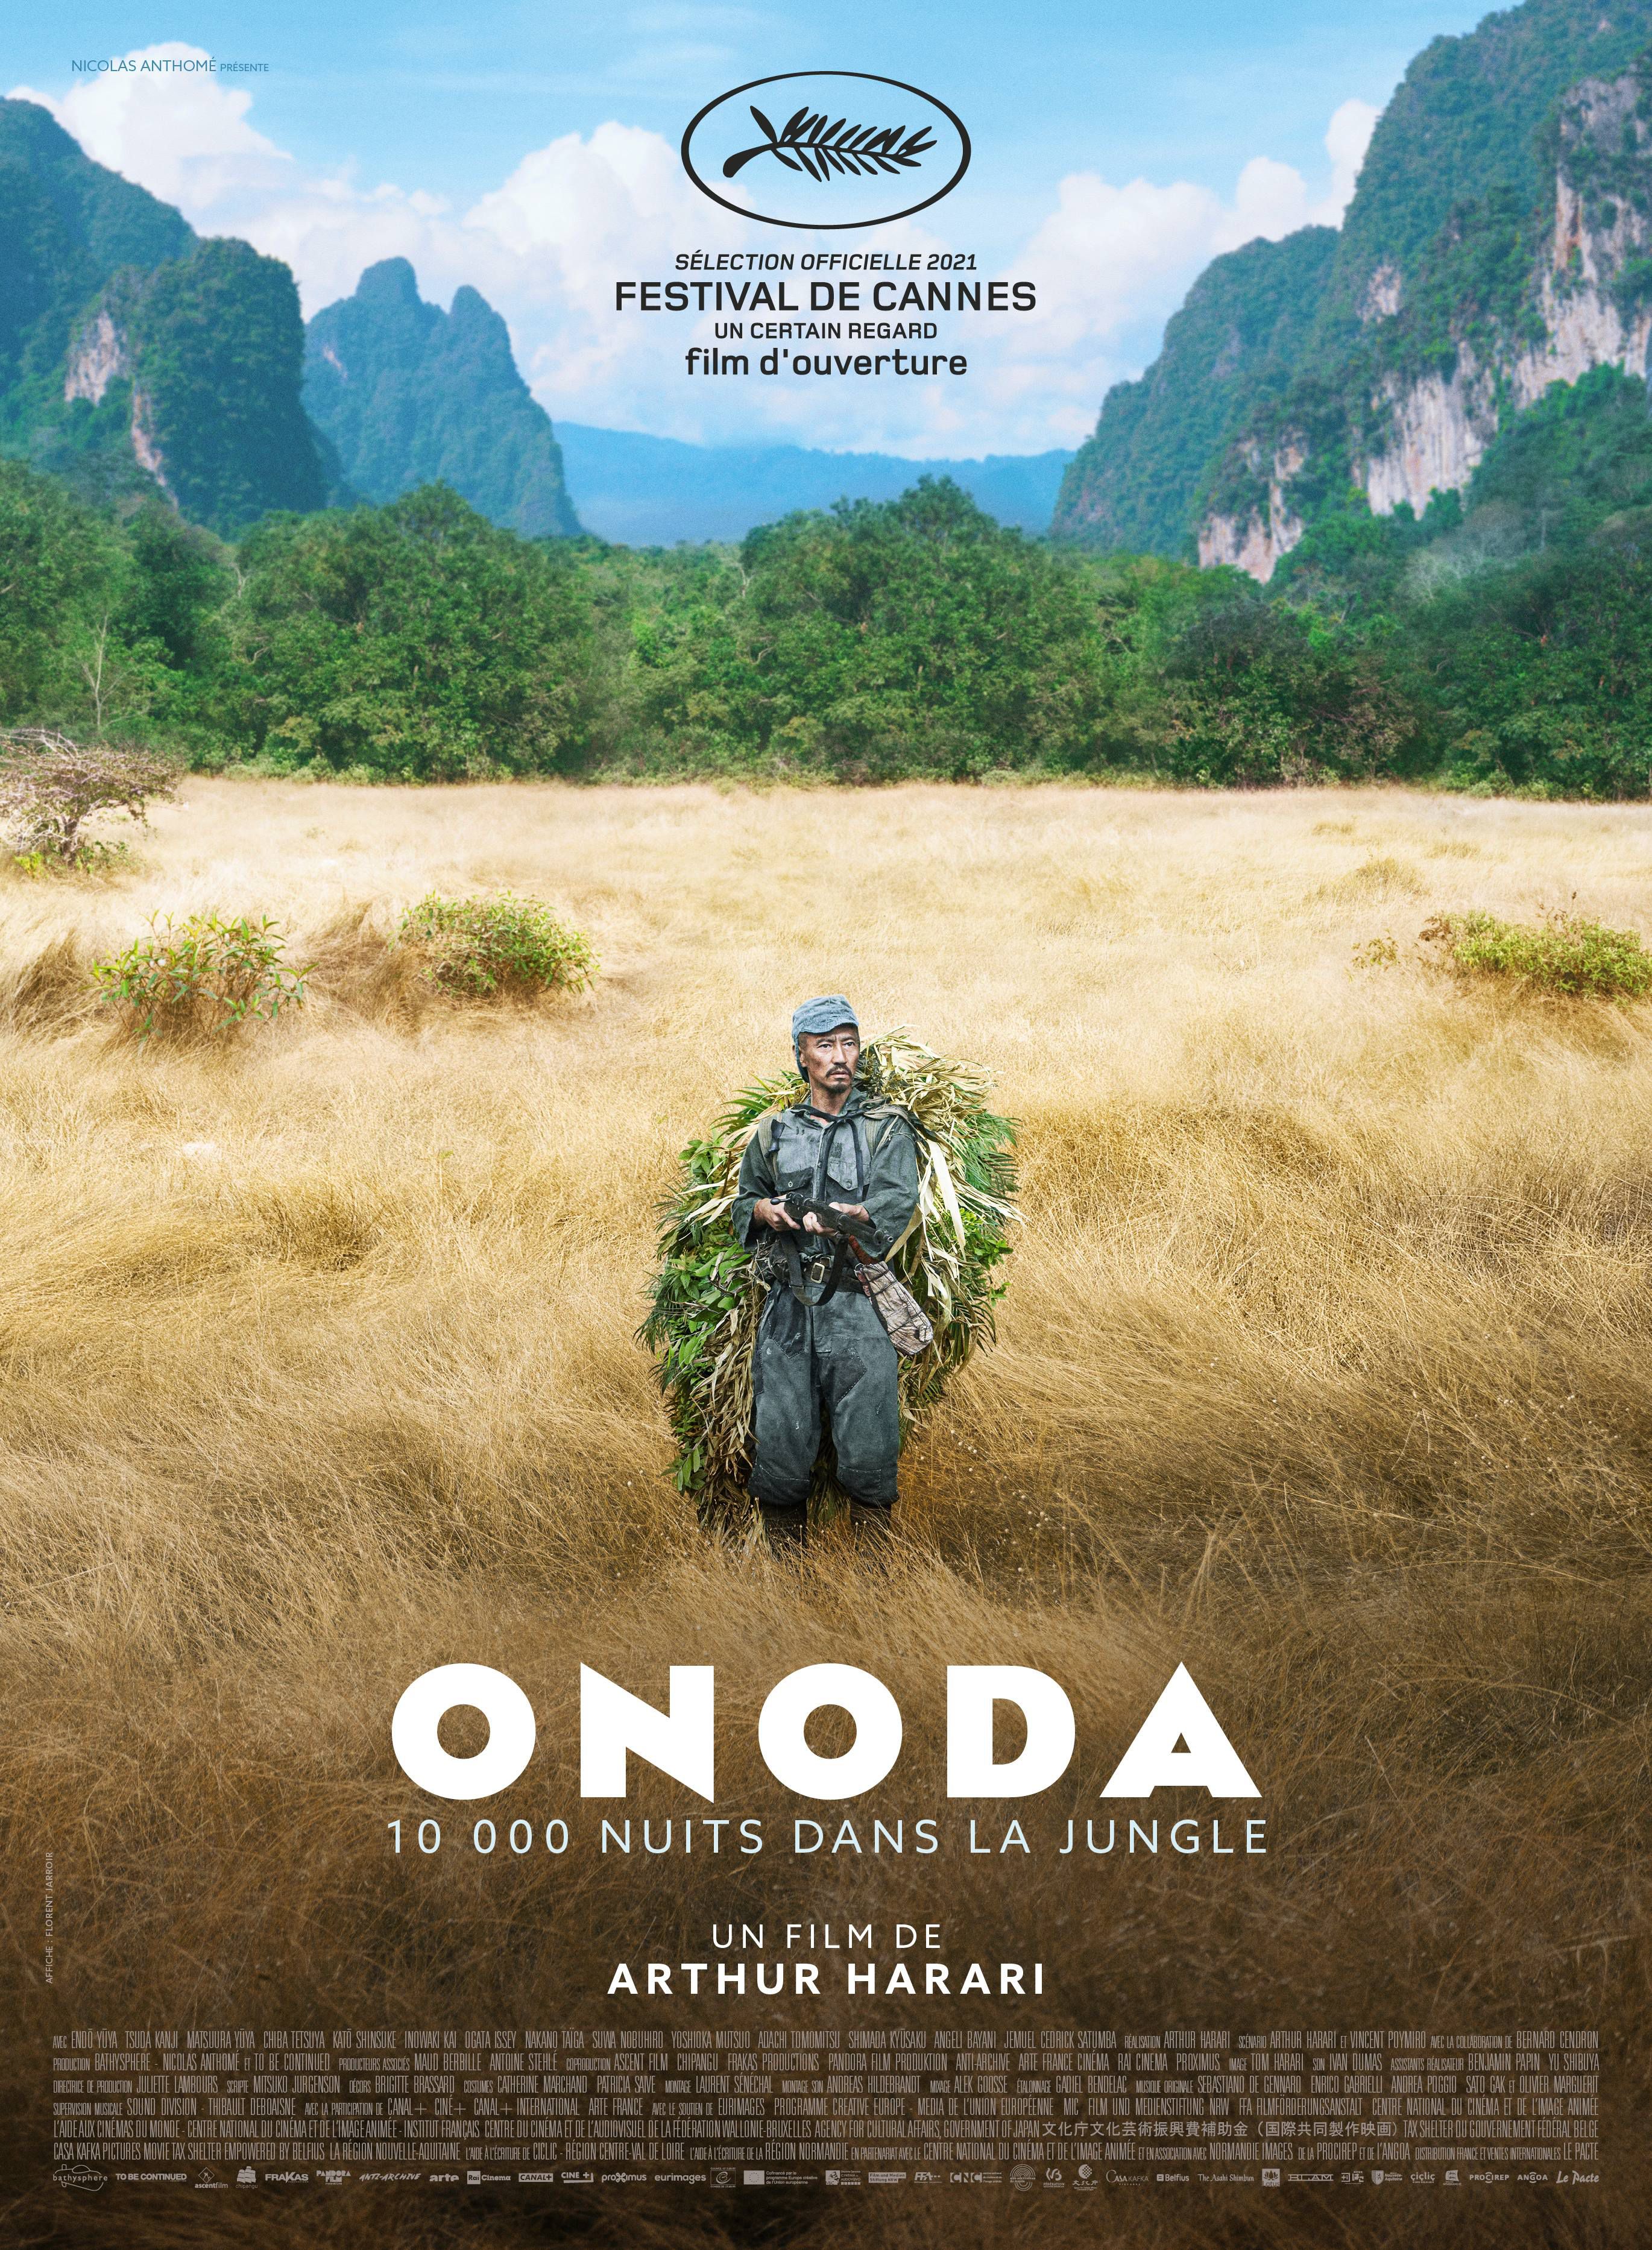 Voir Film Onoda, 10 000 nuits dans la jungle - Film (2021) streaming VF gratuit complet